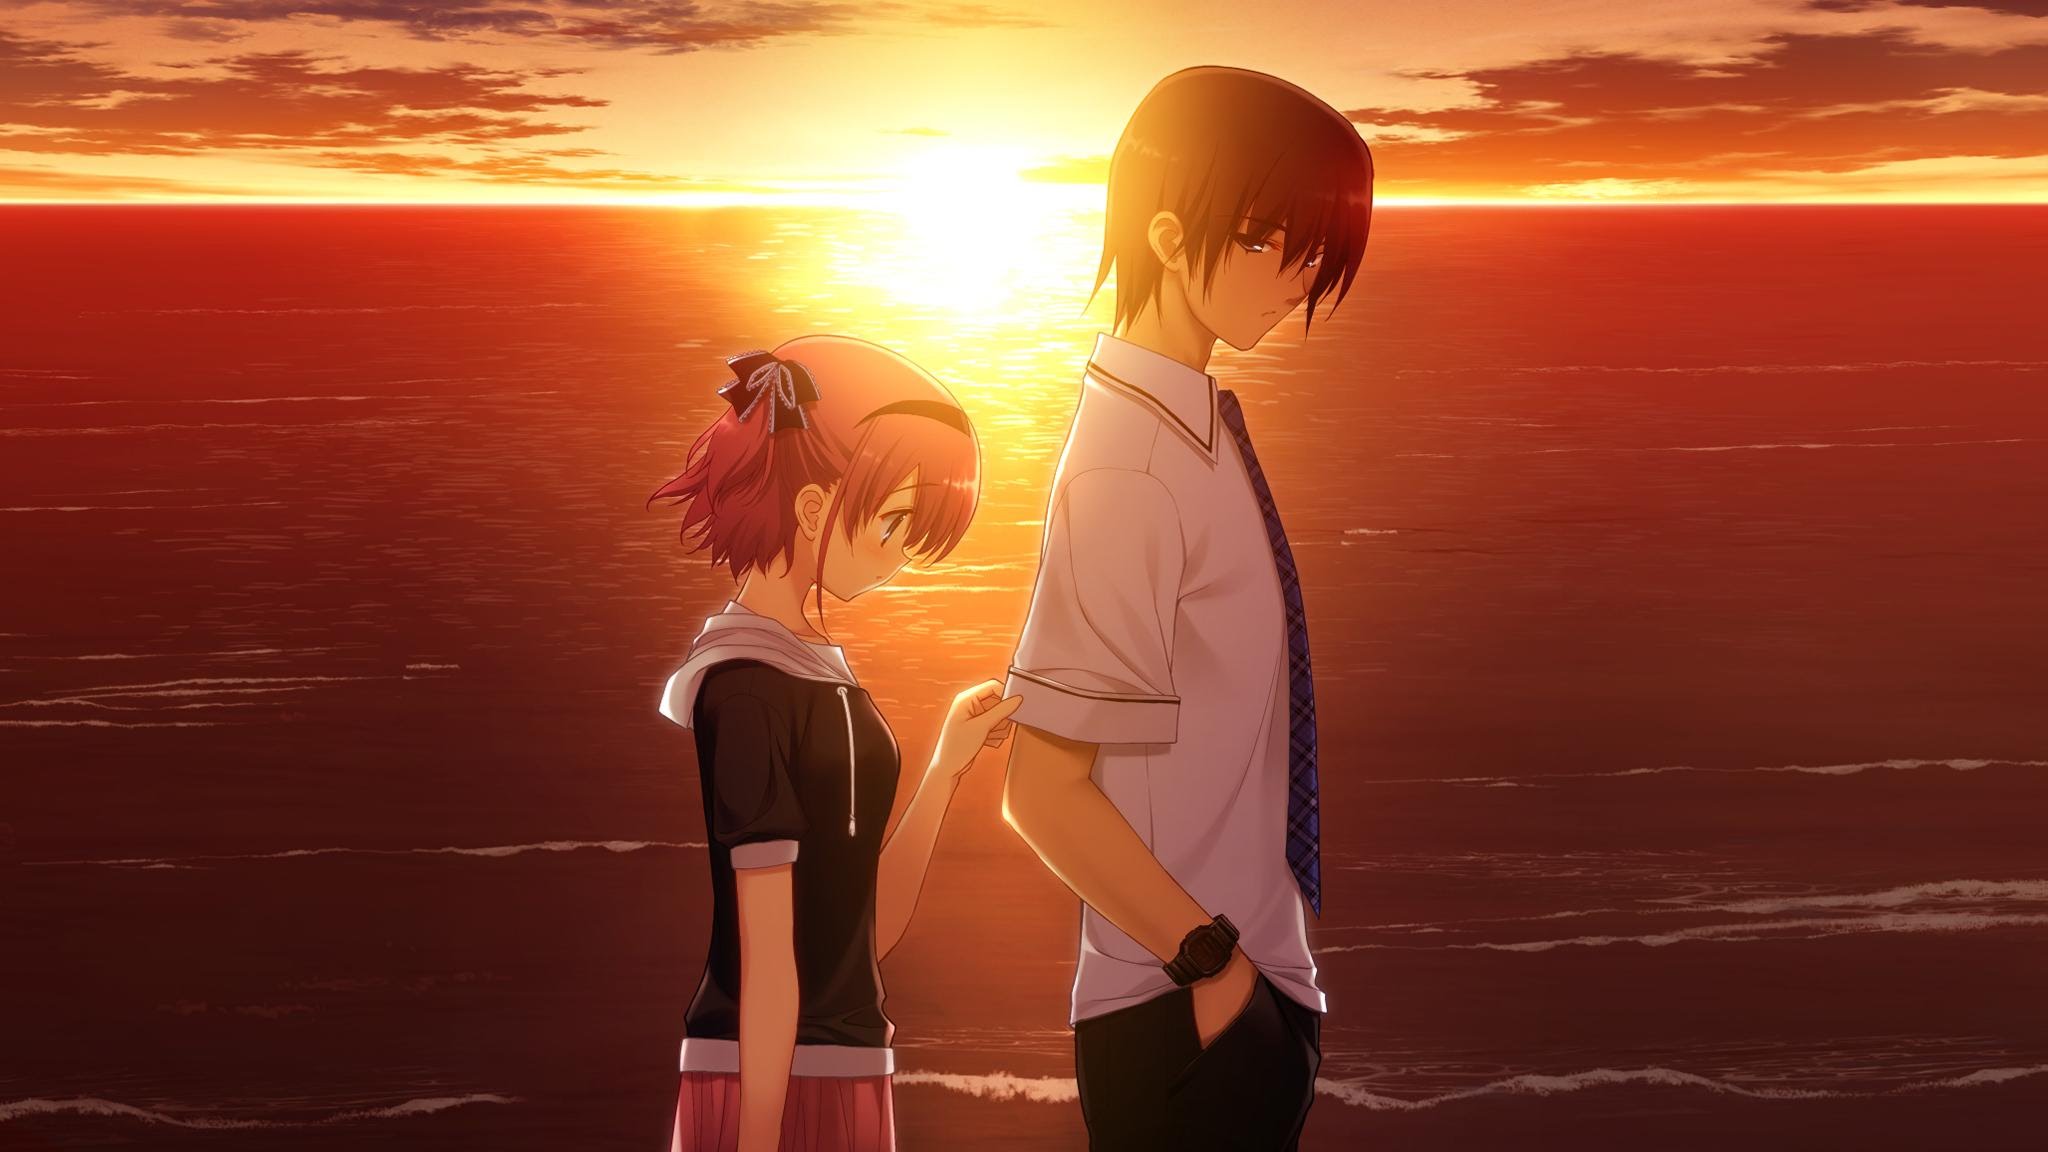 Hình ảnh Anime tình yêu đẹp: Hãy đắm chìm vào thế giới Anime với những tình yêu đậm chất nhật bản. Hình ảnh Anime tình yêu đẹp sẽ khiến bạn cảm thấy yêu đời hơn với những cặp đôi đầy cảm xúc. Chắc chắn bạn sẽ không thể rời mắt khỏi những bức ảnh này.